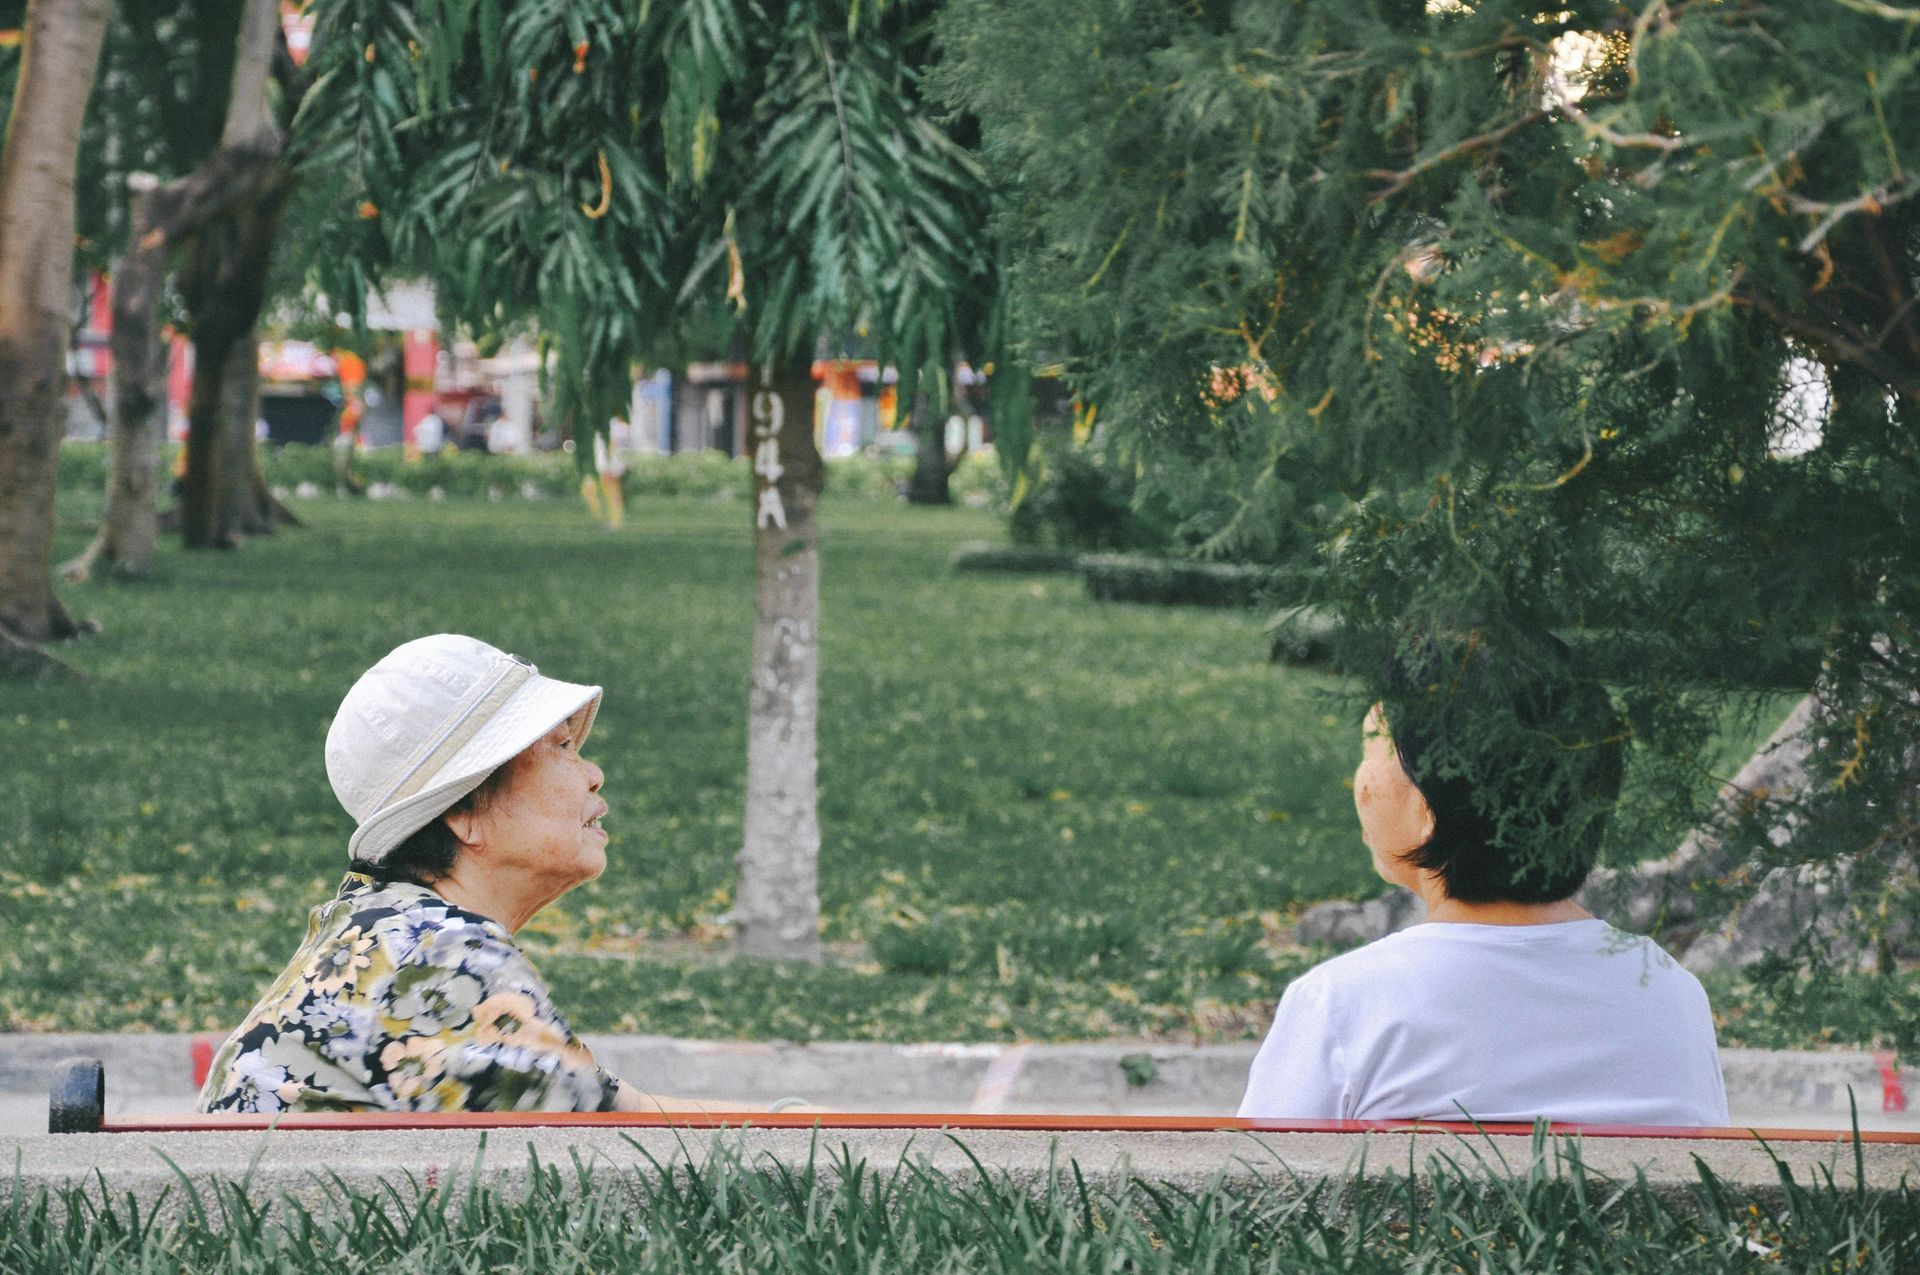 Two elderly women sitting in a park.